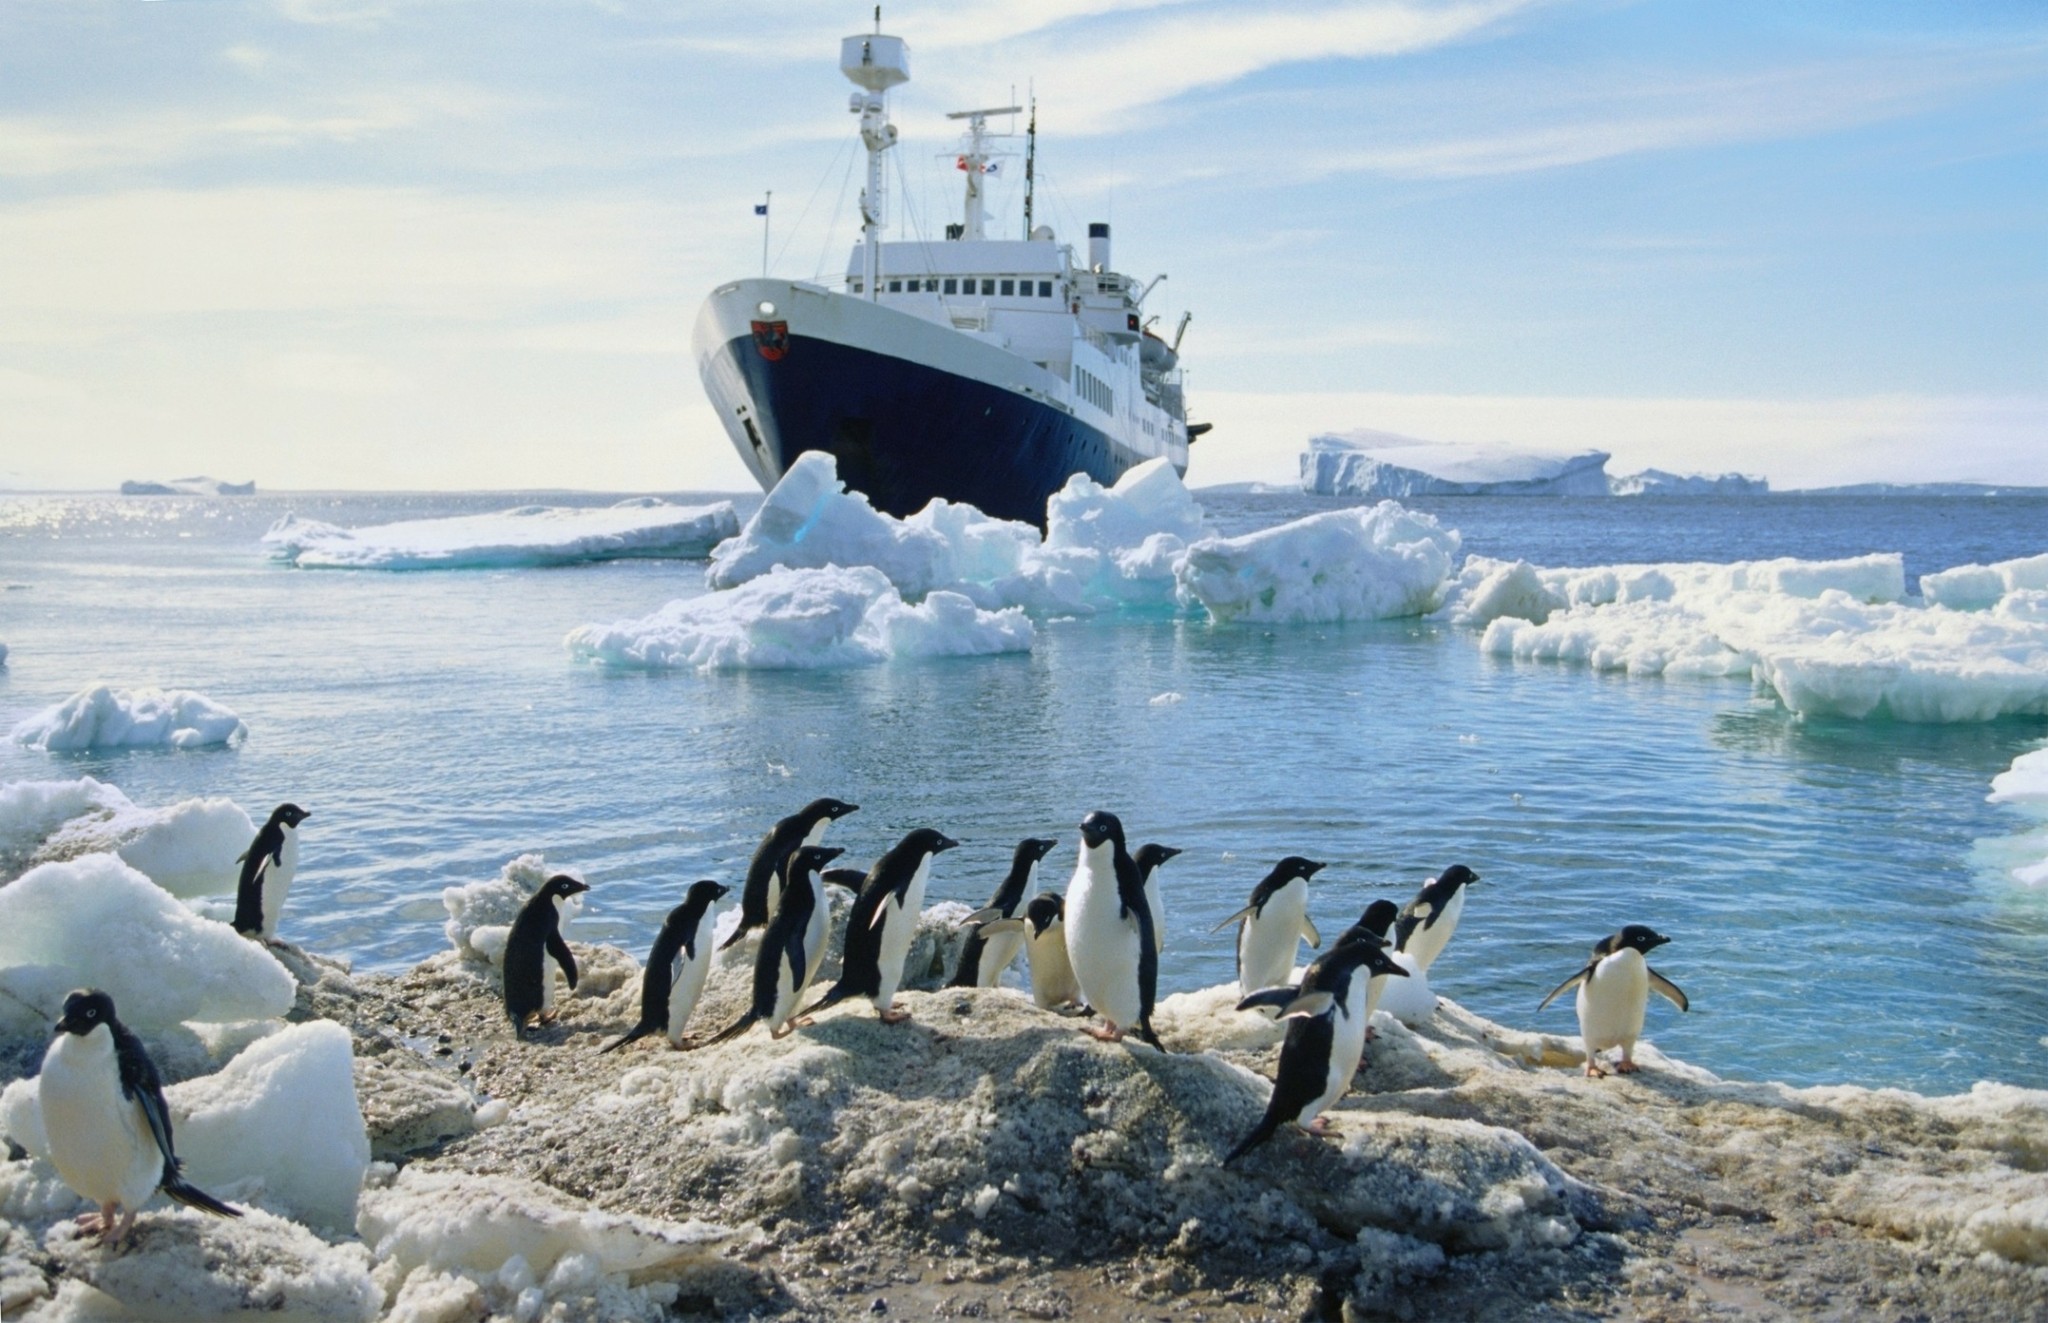 Ανταρκτική: Η συναρπαστική διαδρομή προς το απόλυτο ταξίδι μιας ζωής